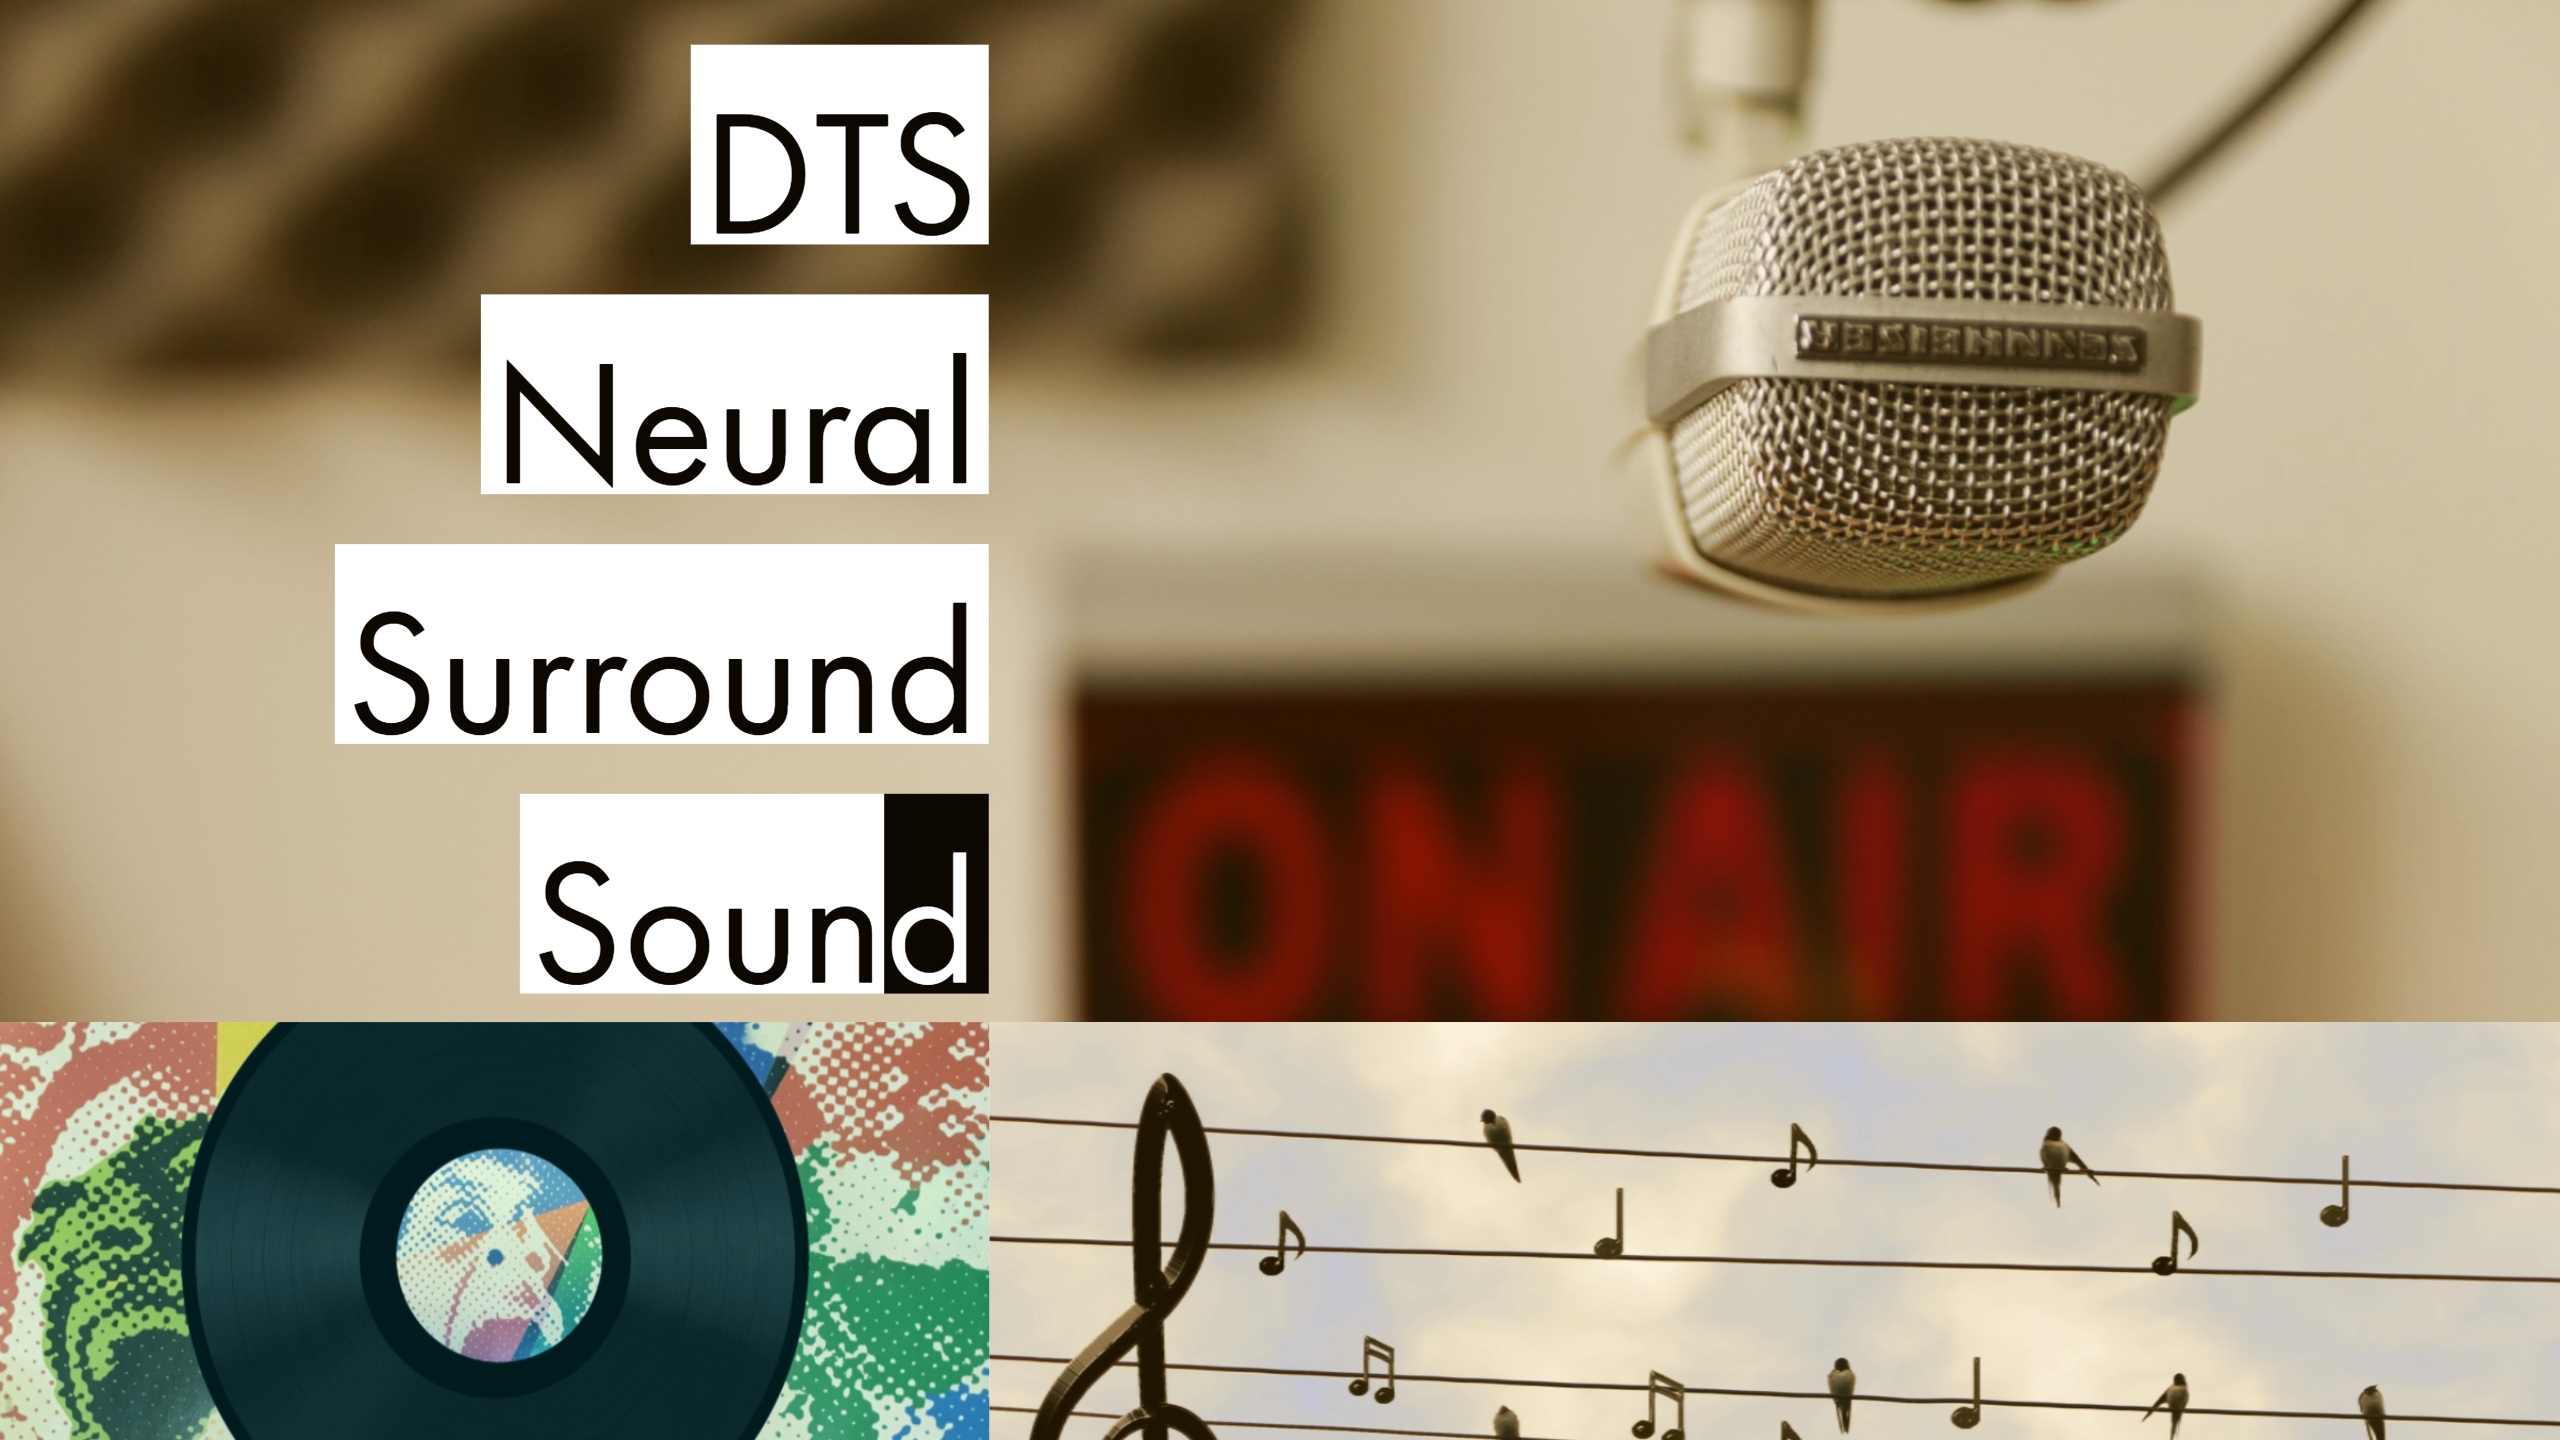 DTS Neural Surround Sound